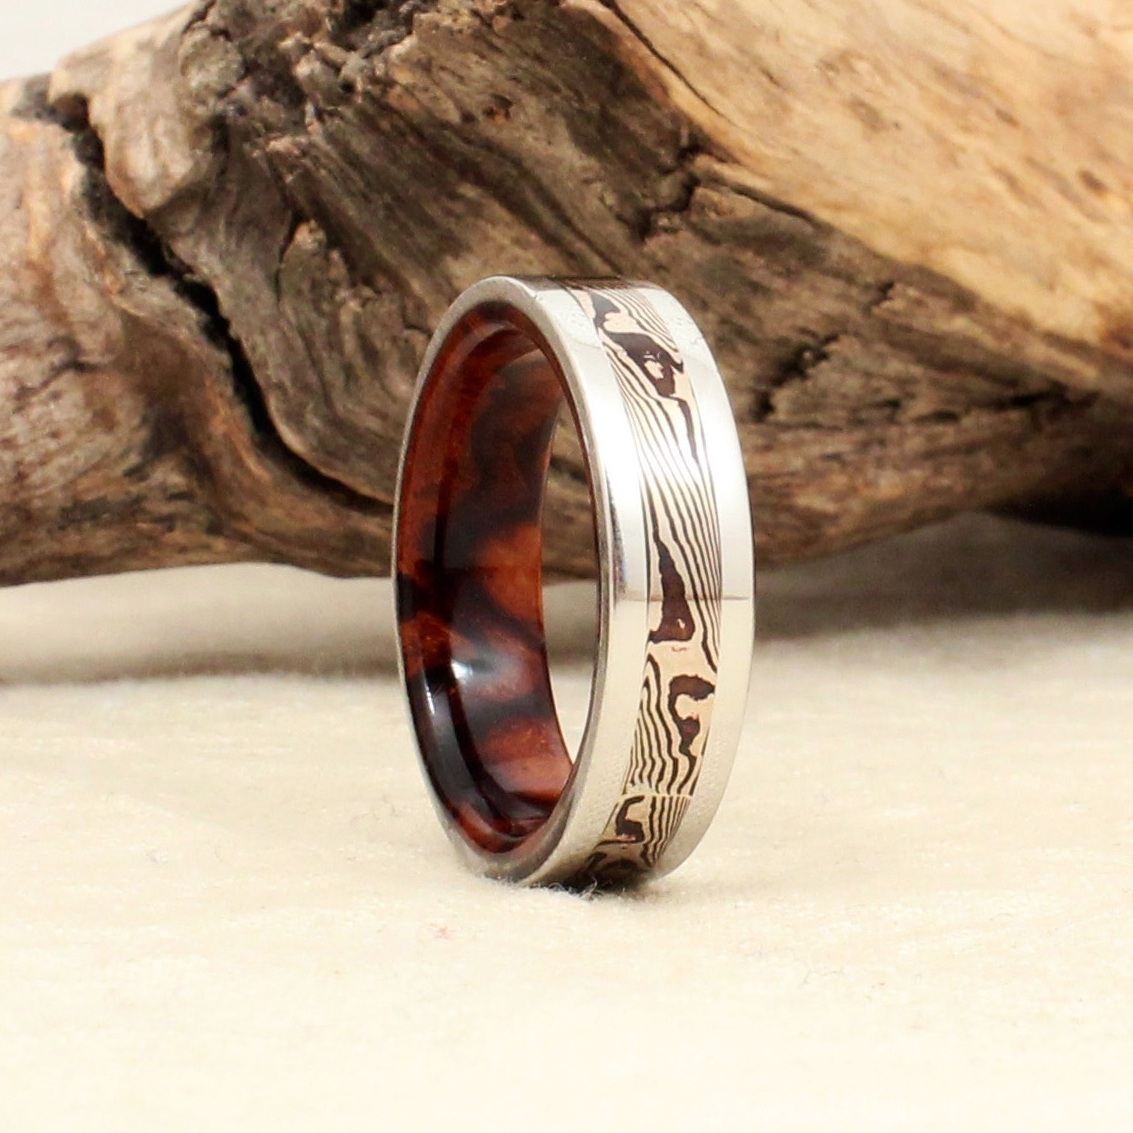 cobalt-ring-mokumegane-wedding-ring-wooden-ring-desert-ironwood-wedgewood.jpg